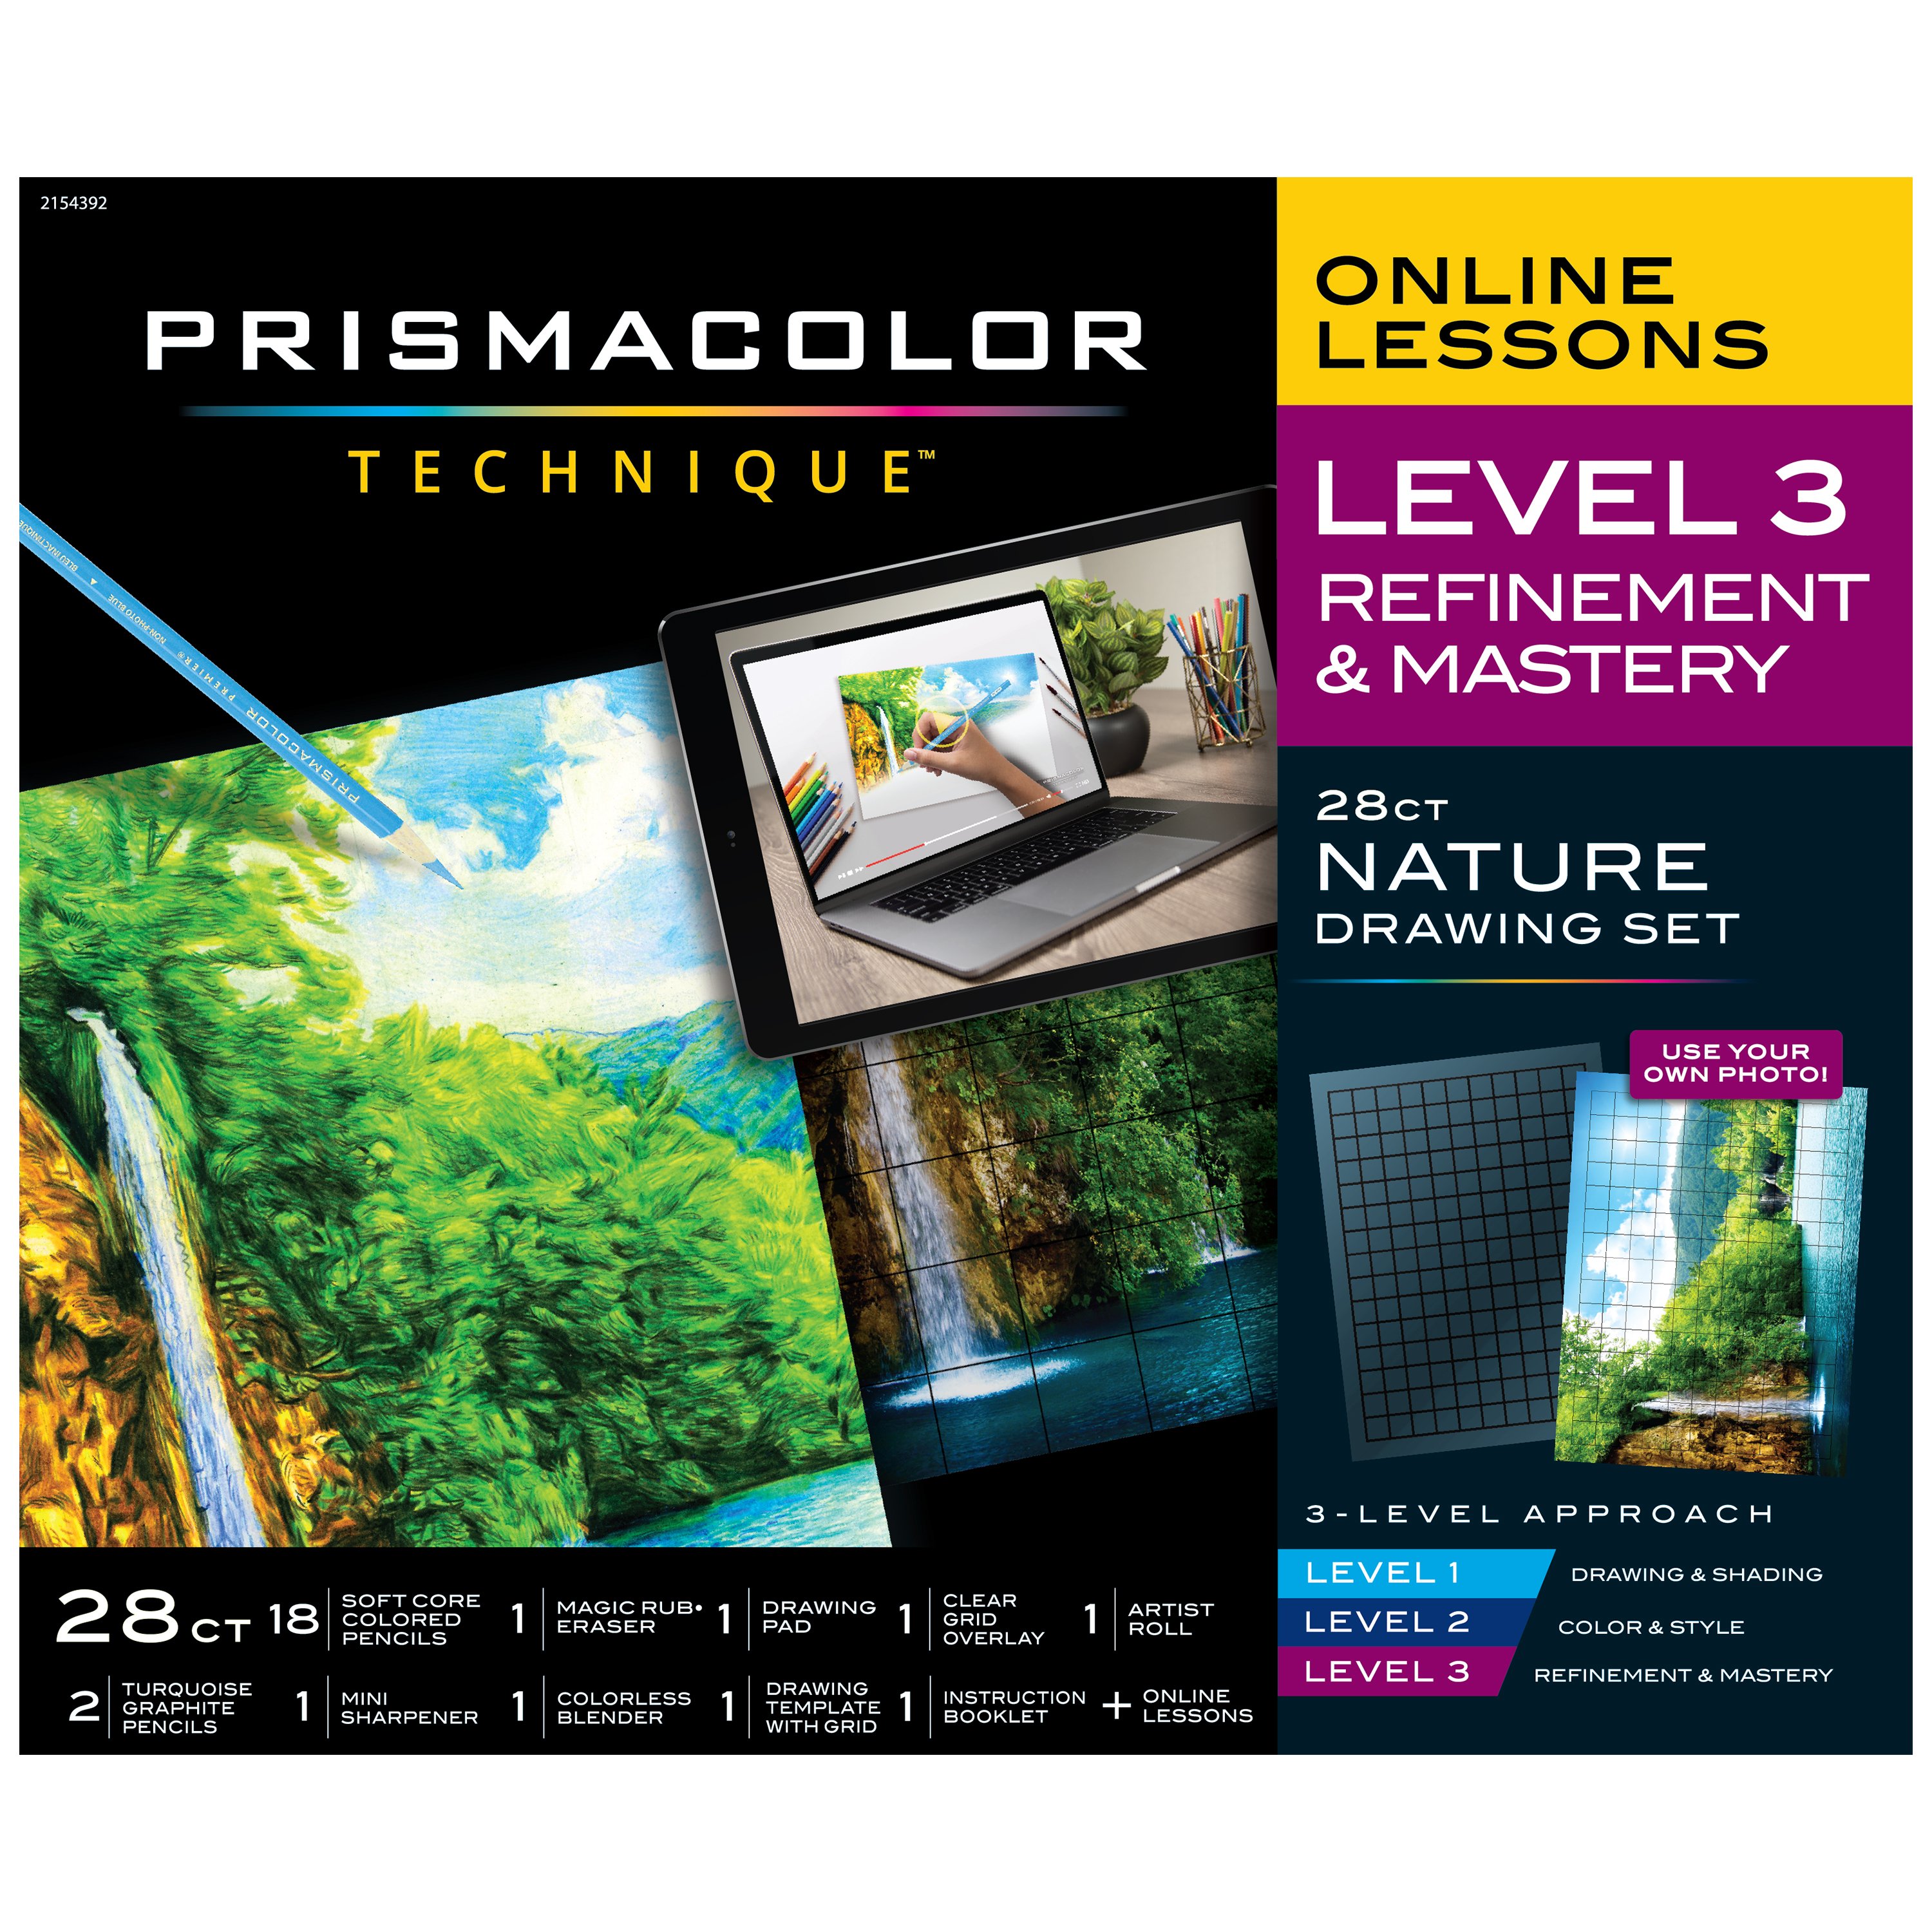 PRISMACOLOR TECHNIQUE 25 PC ART SET LANDSCAPE LEVELS 1, 2, 3 + 3 ONLINE  LESSONS